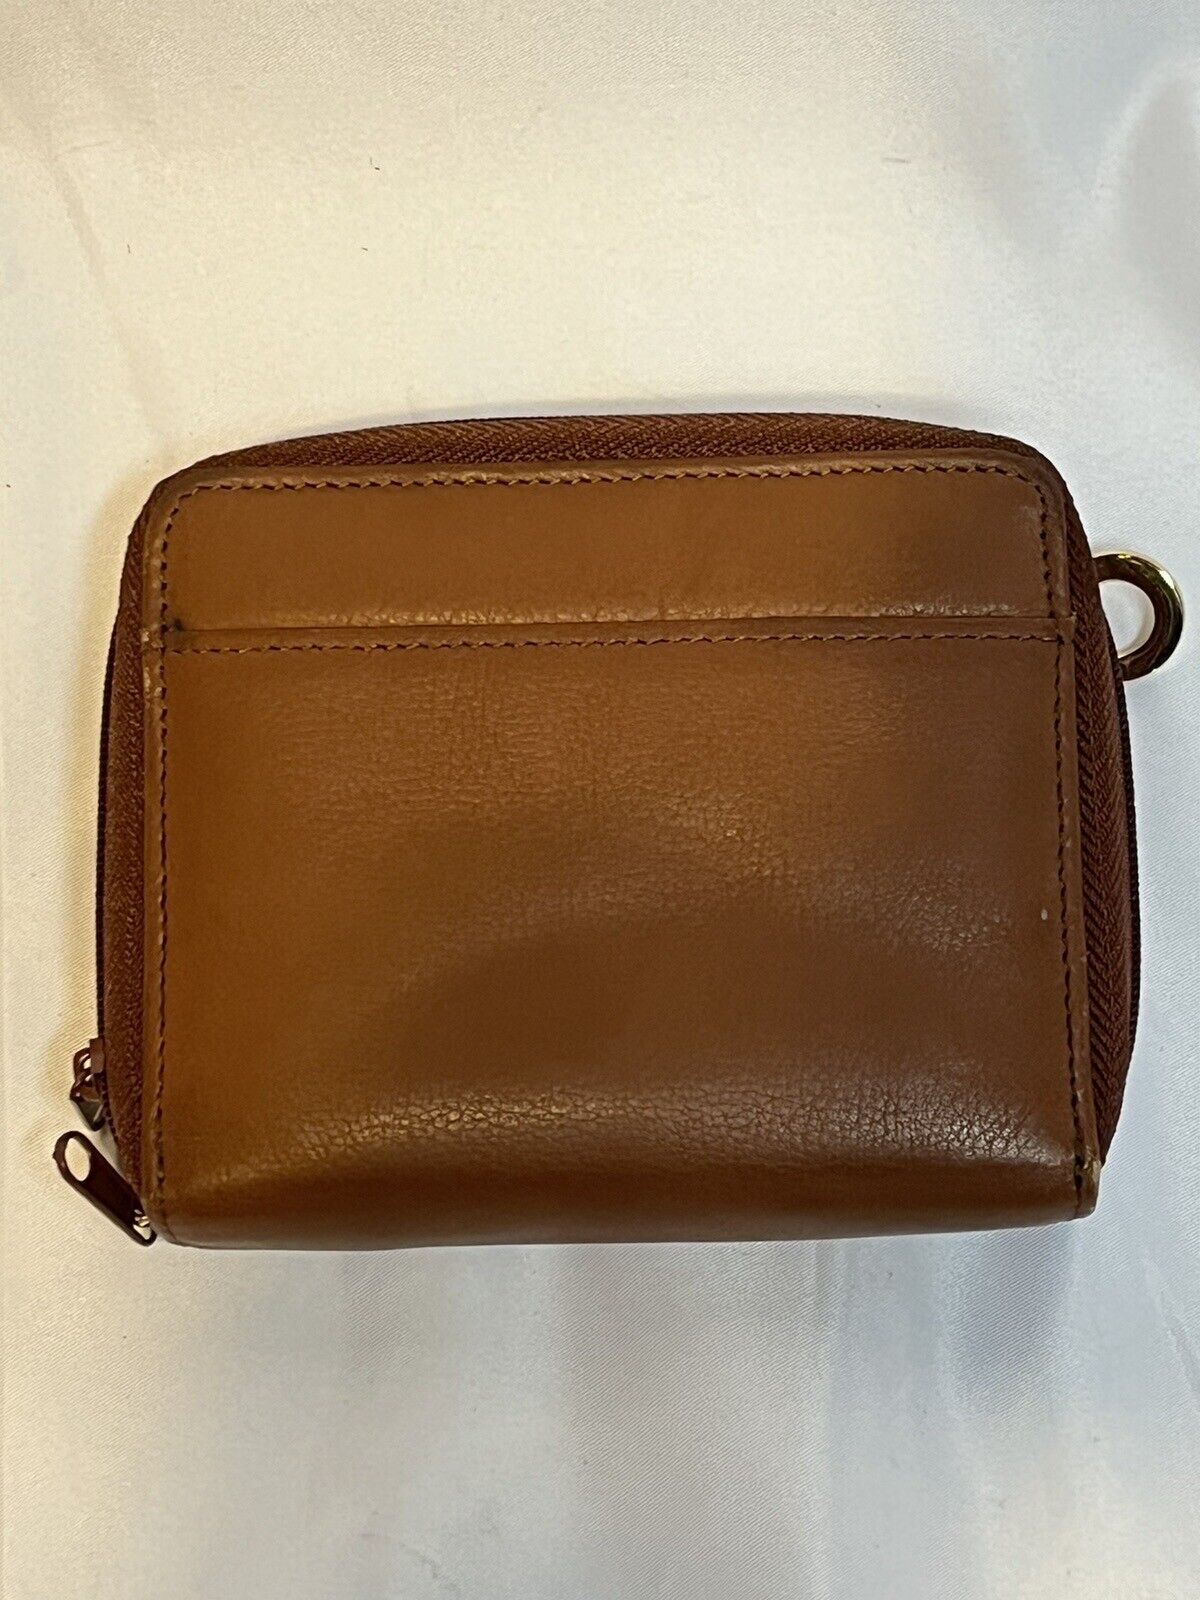 Princess Gardner Brown Tan Leather Dual Zip Around Organizer Wallet 5" x 4.5"